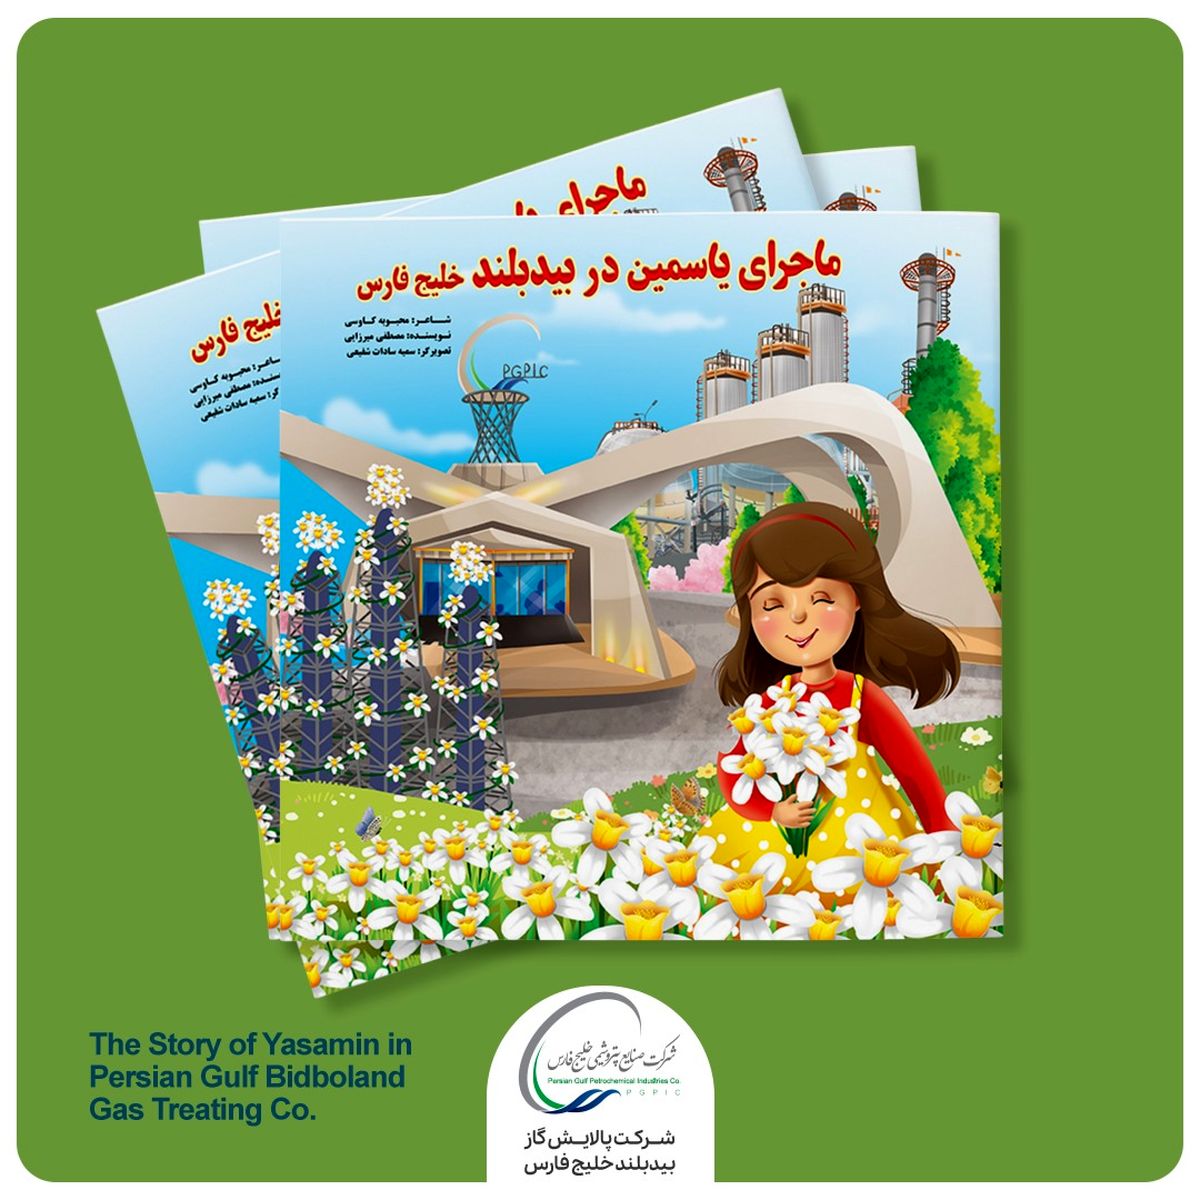 کتاب داستان کودک «ماجرای یاسمین در بیدبلند خلیج فارس» منتشر شد